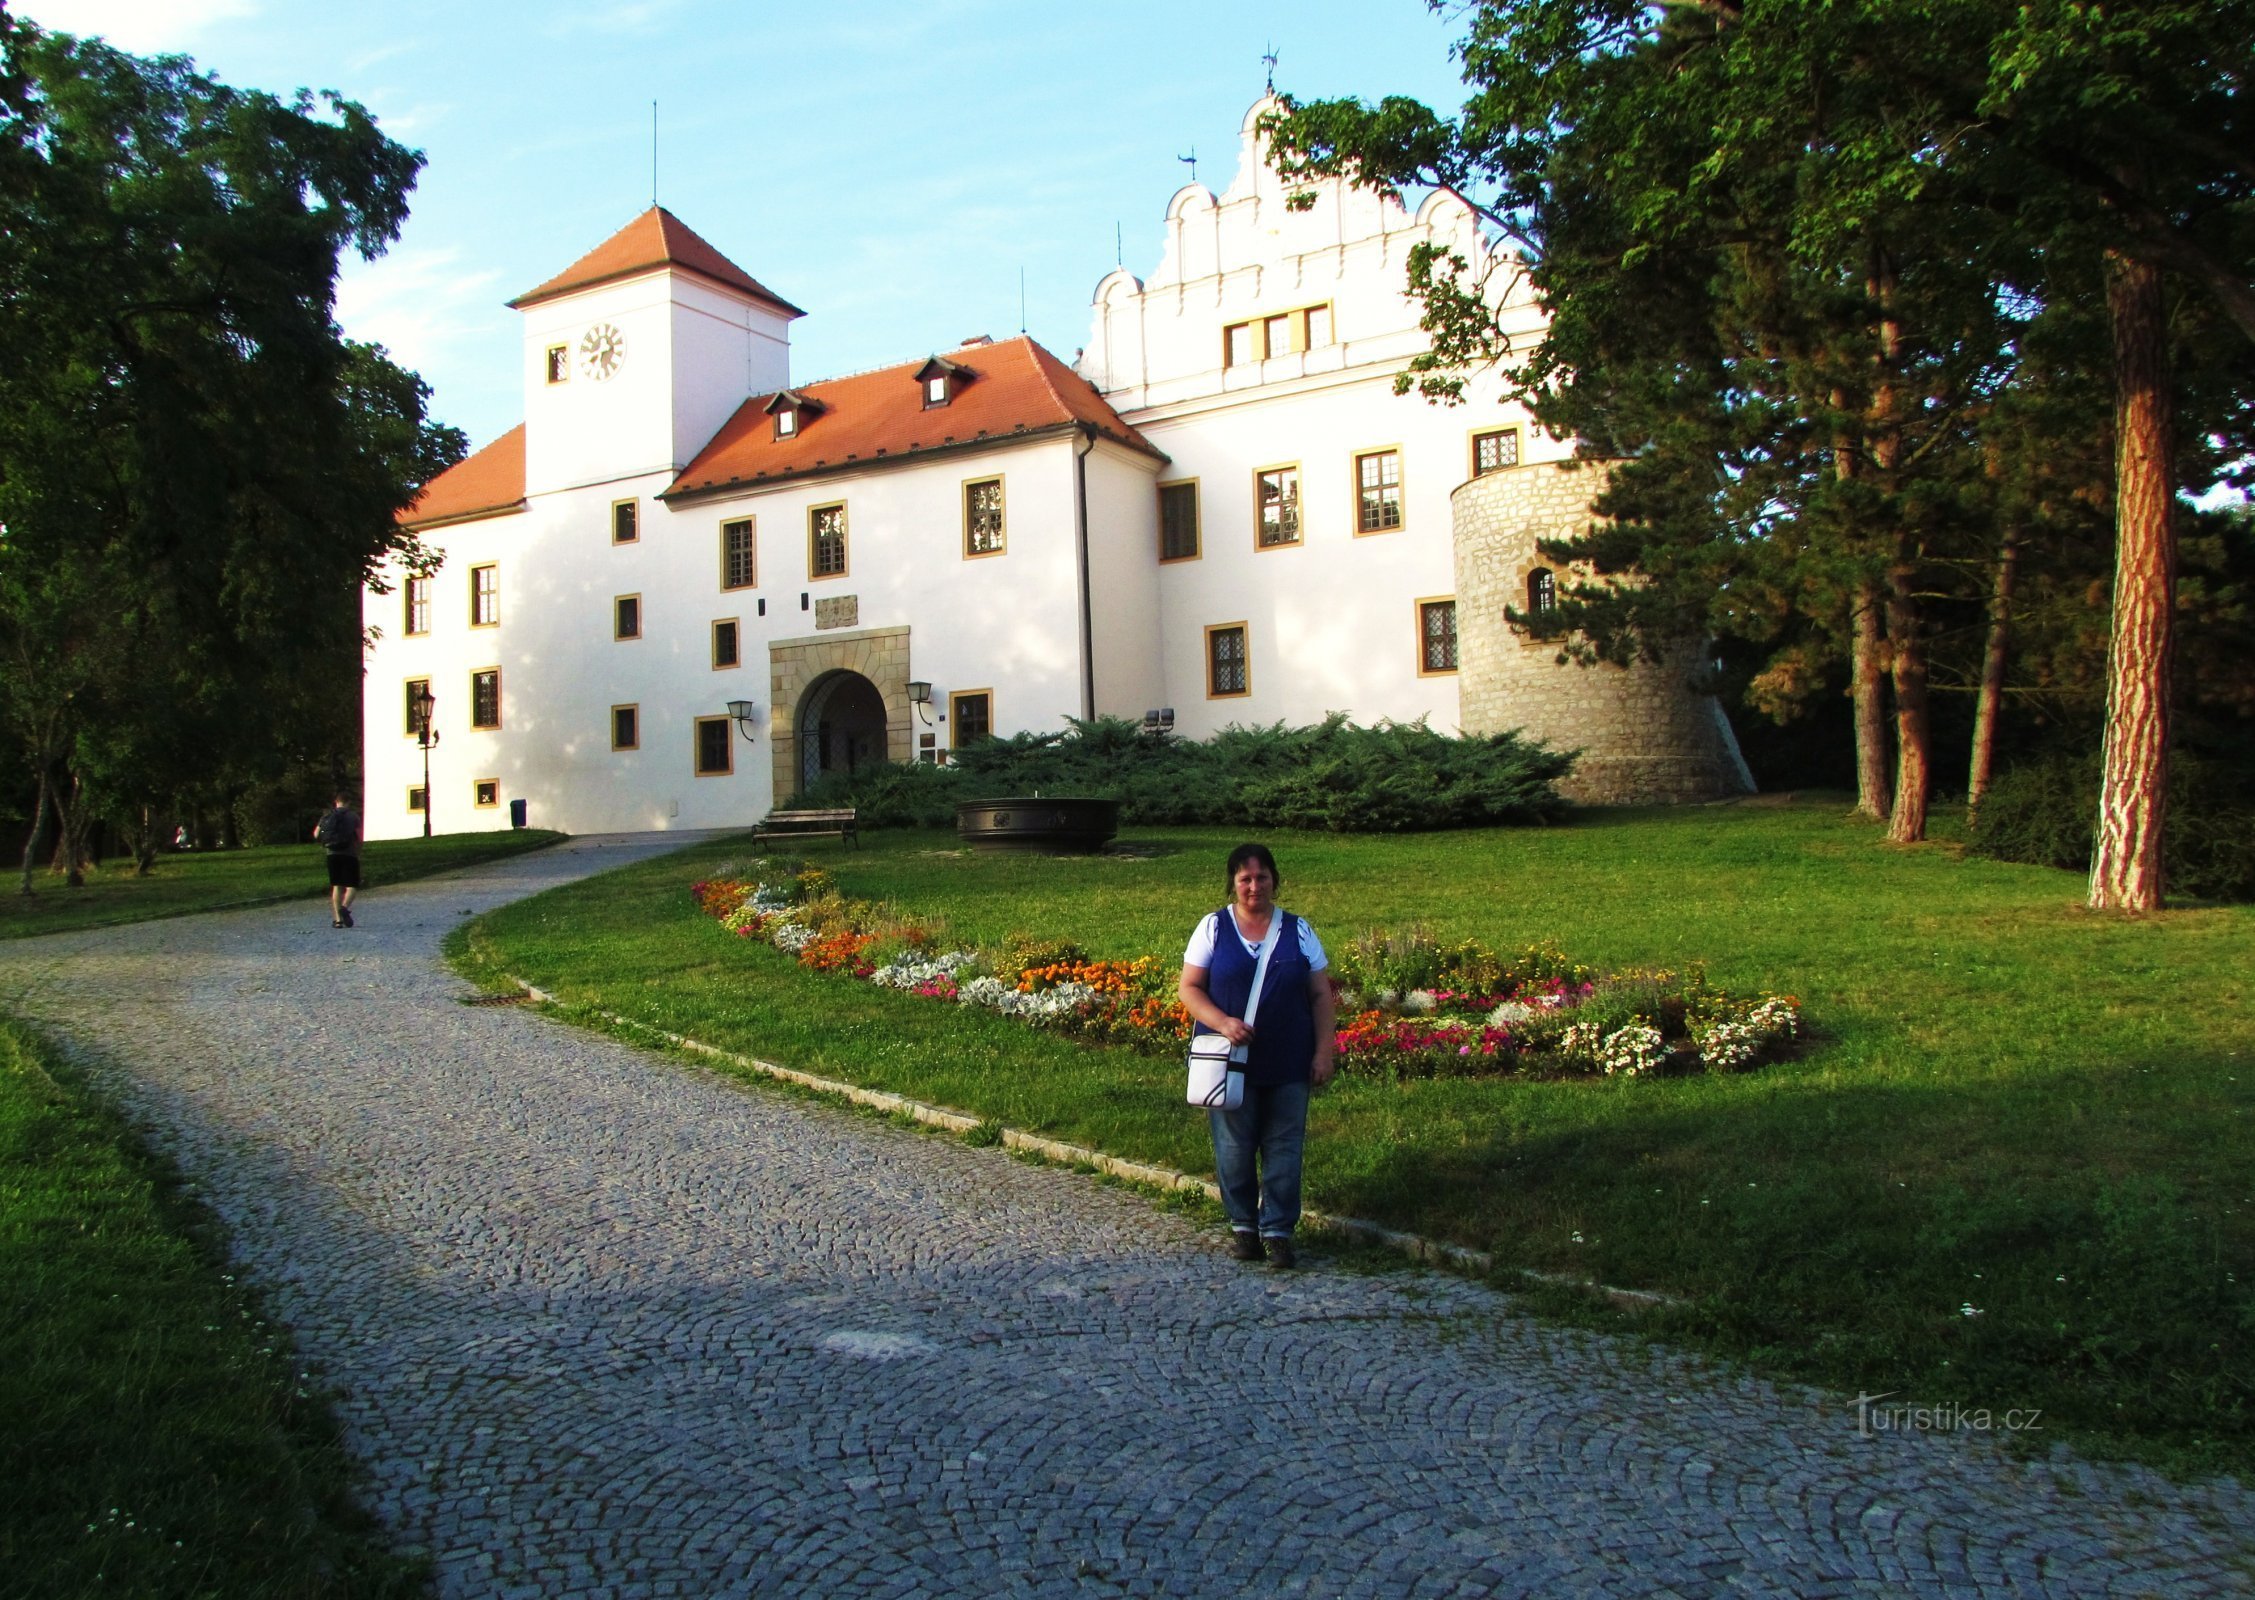 Castle in Blansko